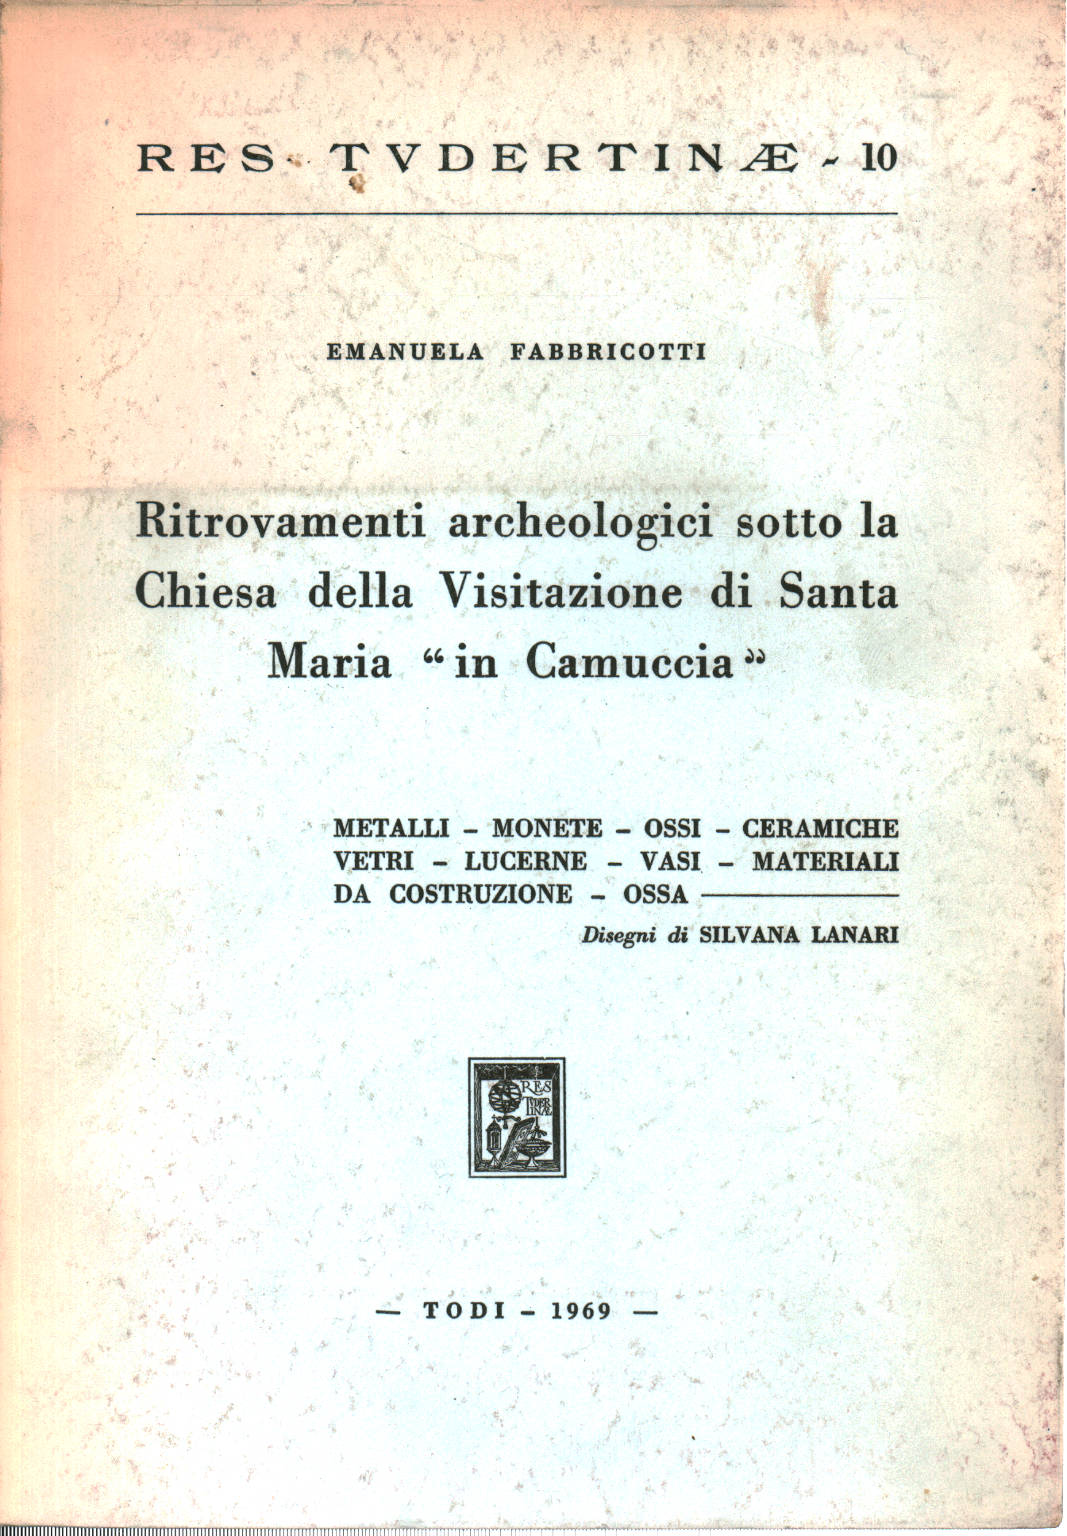 Découvertes archéologiques sous l'église du VI, Emanuela Fabbricotti